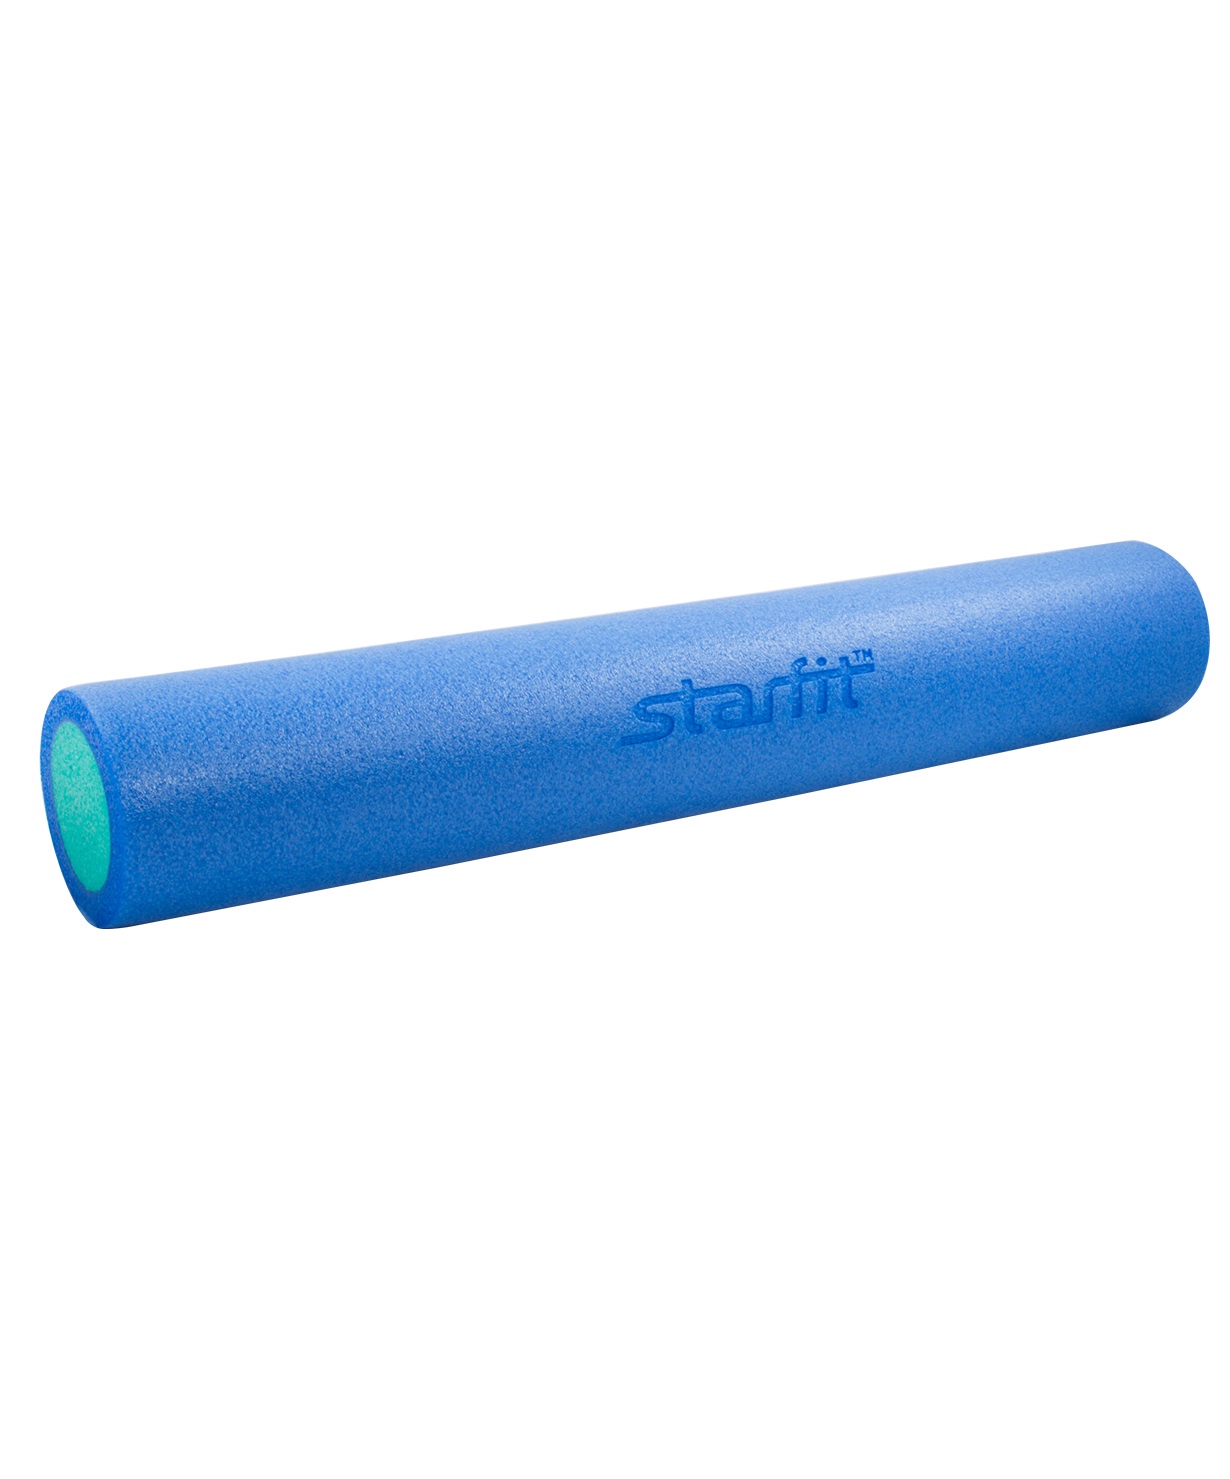 Ролик для йоги и пилатеса Starfit FA-502, УТ-00007266, синий, голубой, 15х90 см